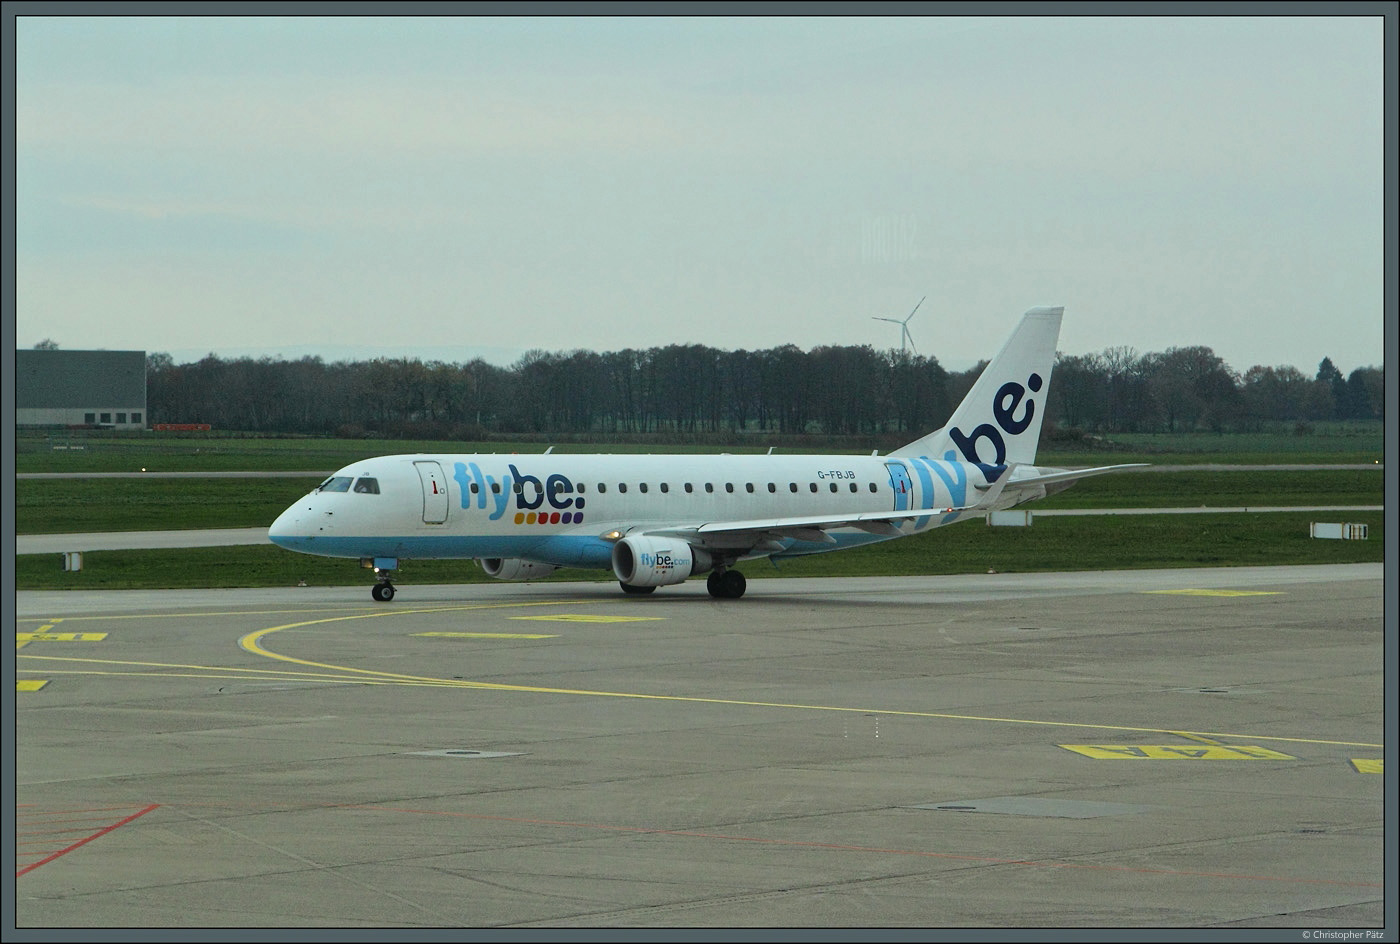 Die Embraer 175 G-FBJB der Flybe ist am 16.11.2015 in Hannover geschoben gelandet. Ende Januar 2023 stellt Flybe den Betrieb ein.